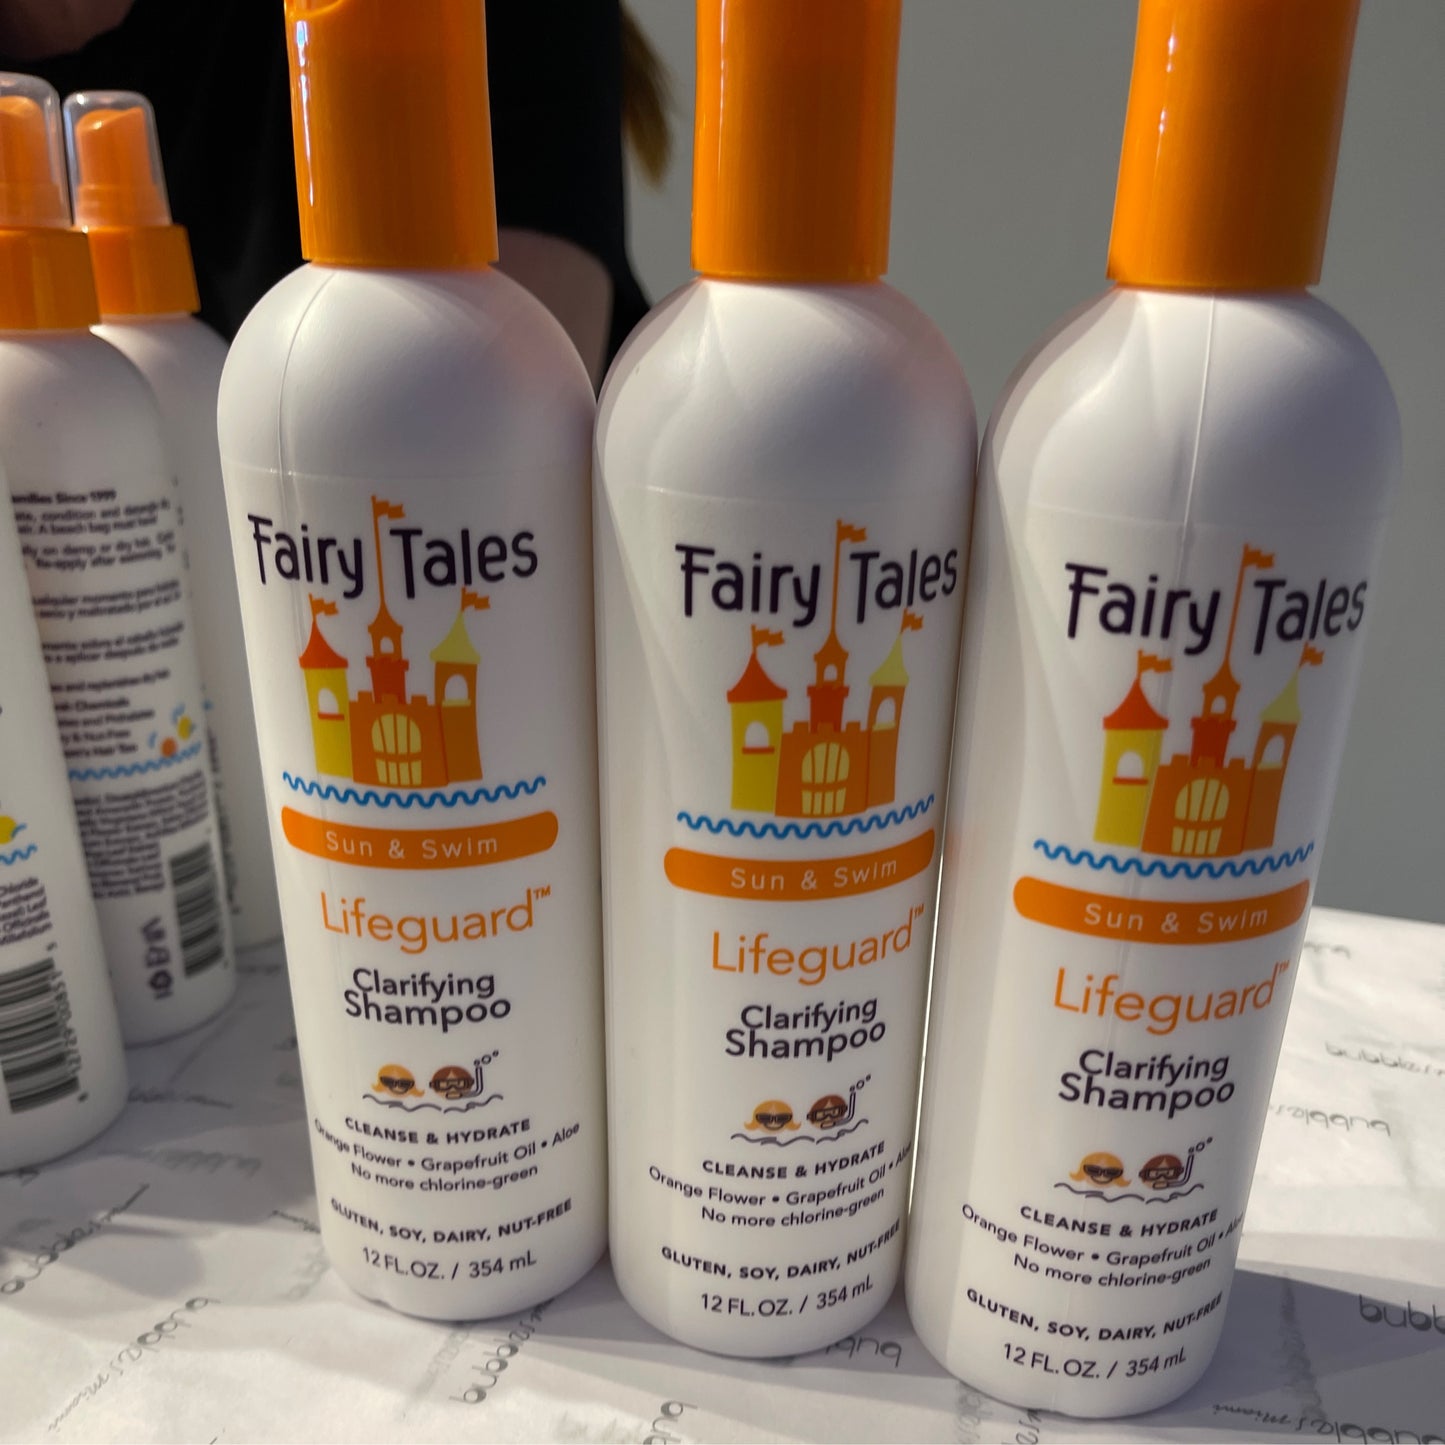 Fairytales clarify shampoo